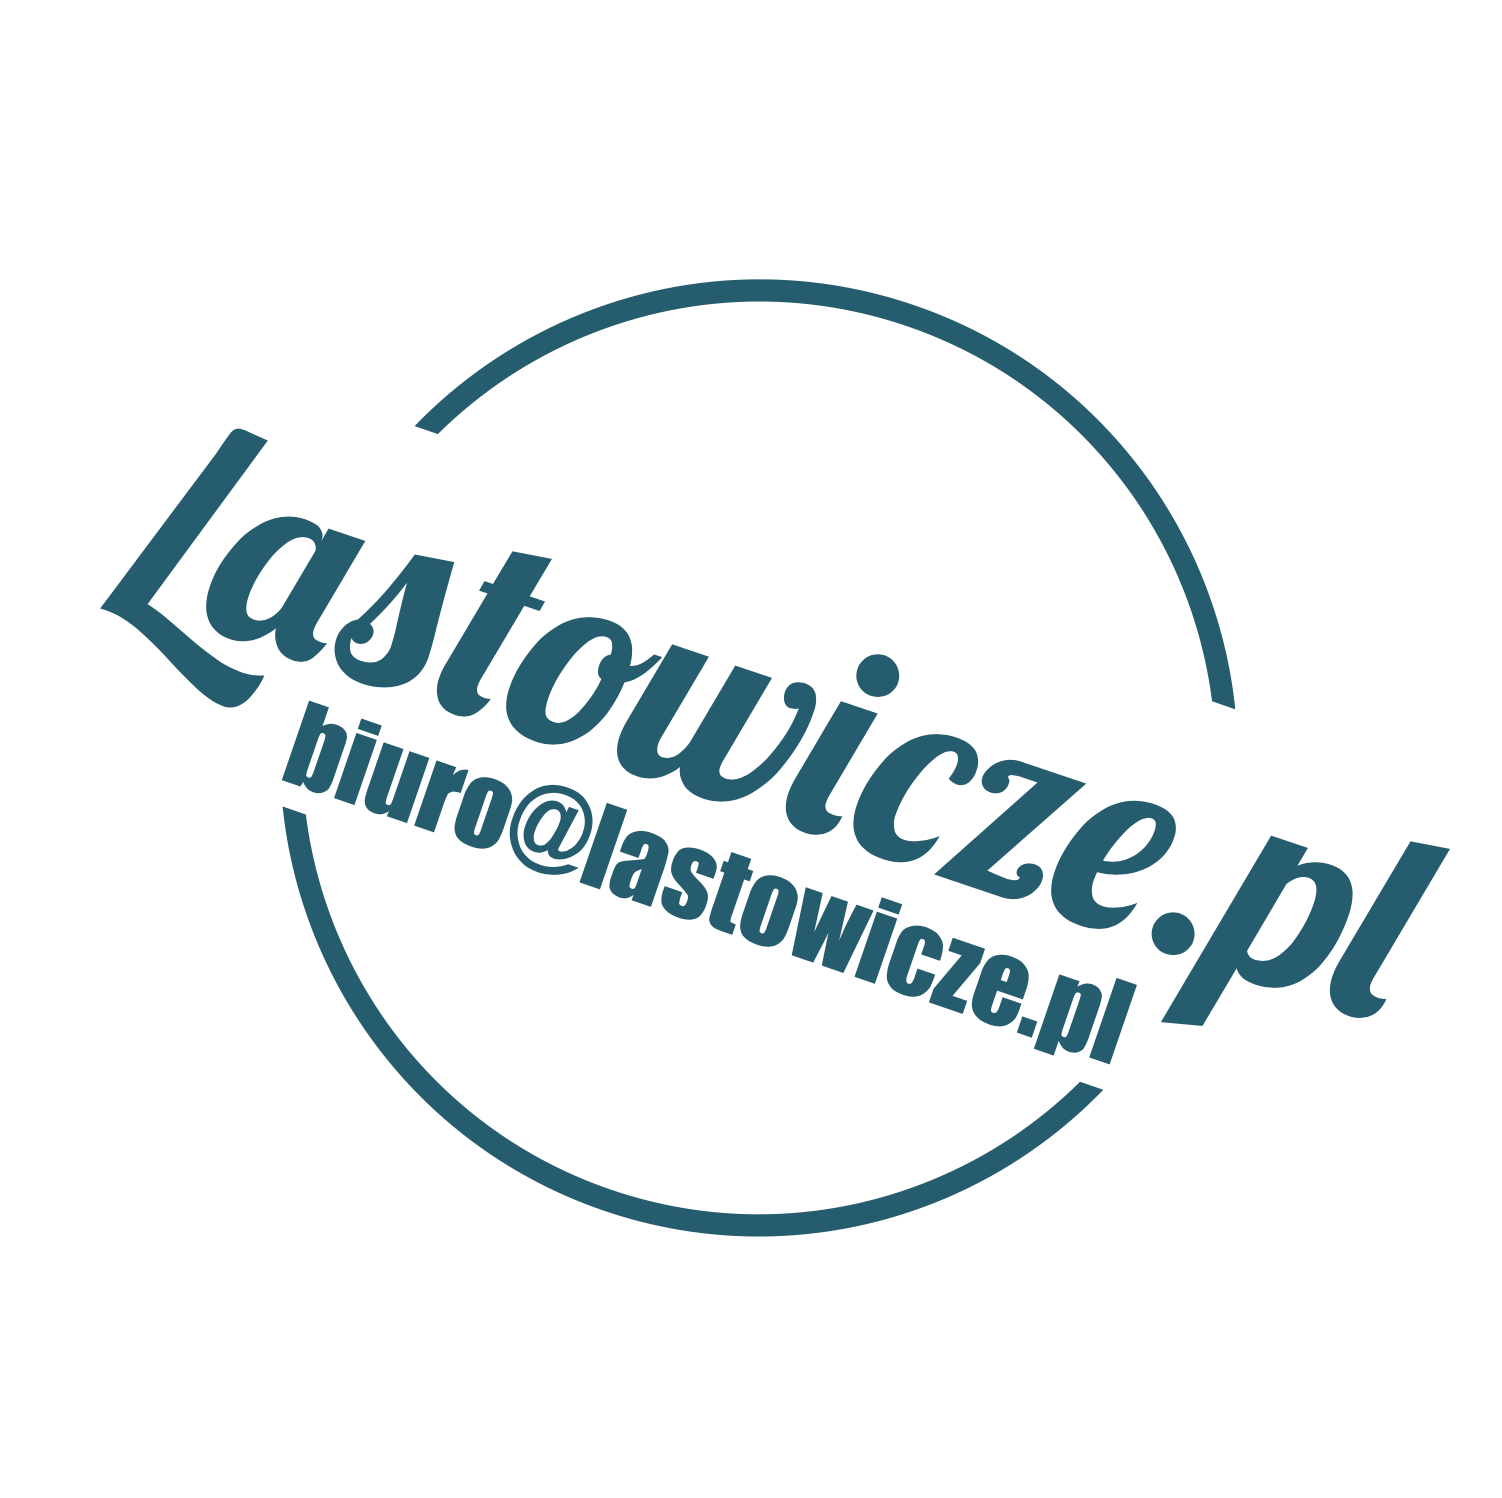 Lastowicze.pl  s.c. Izabela i Grzegorz Kołłb-Sieleccy